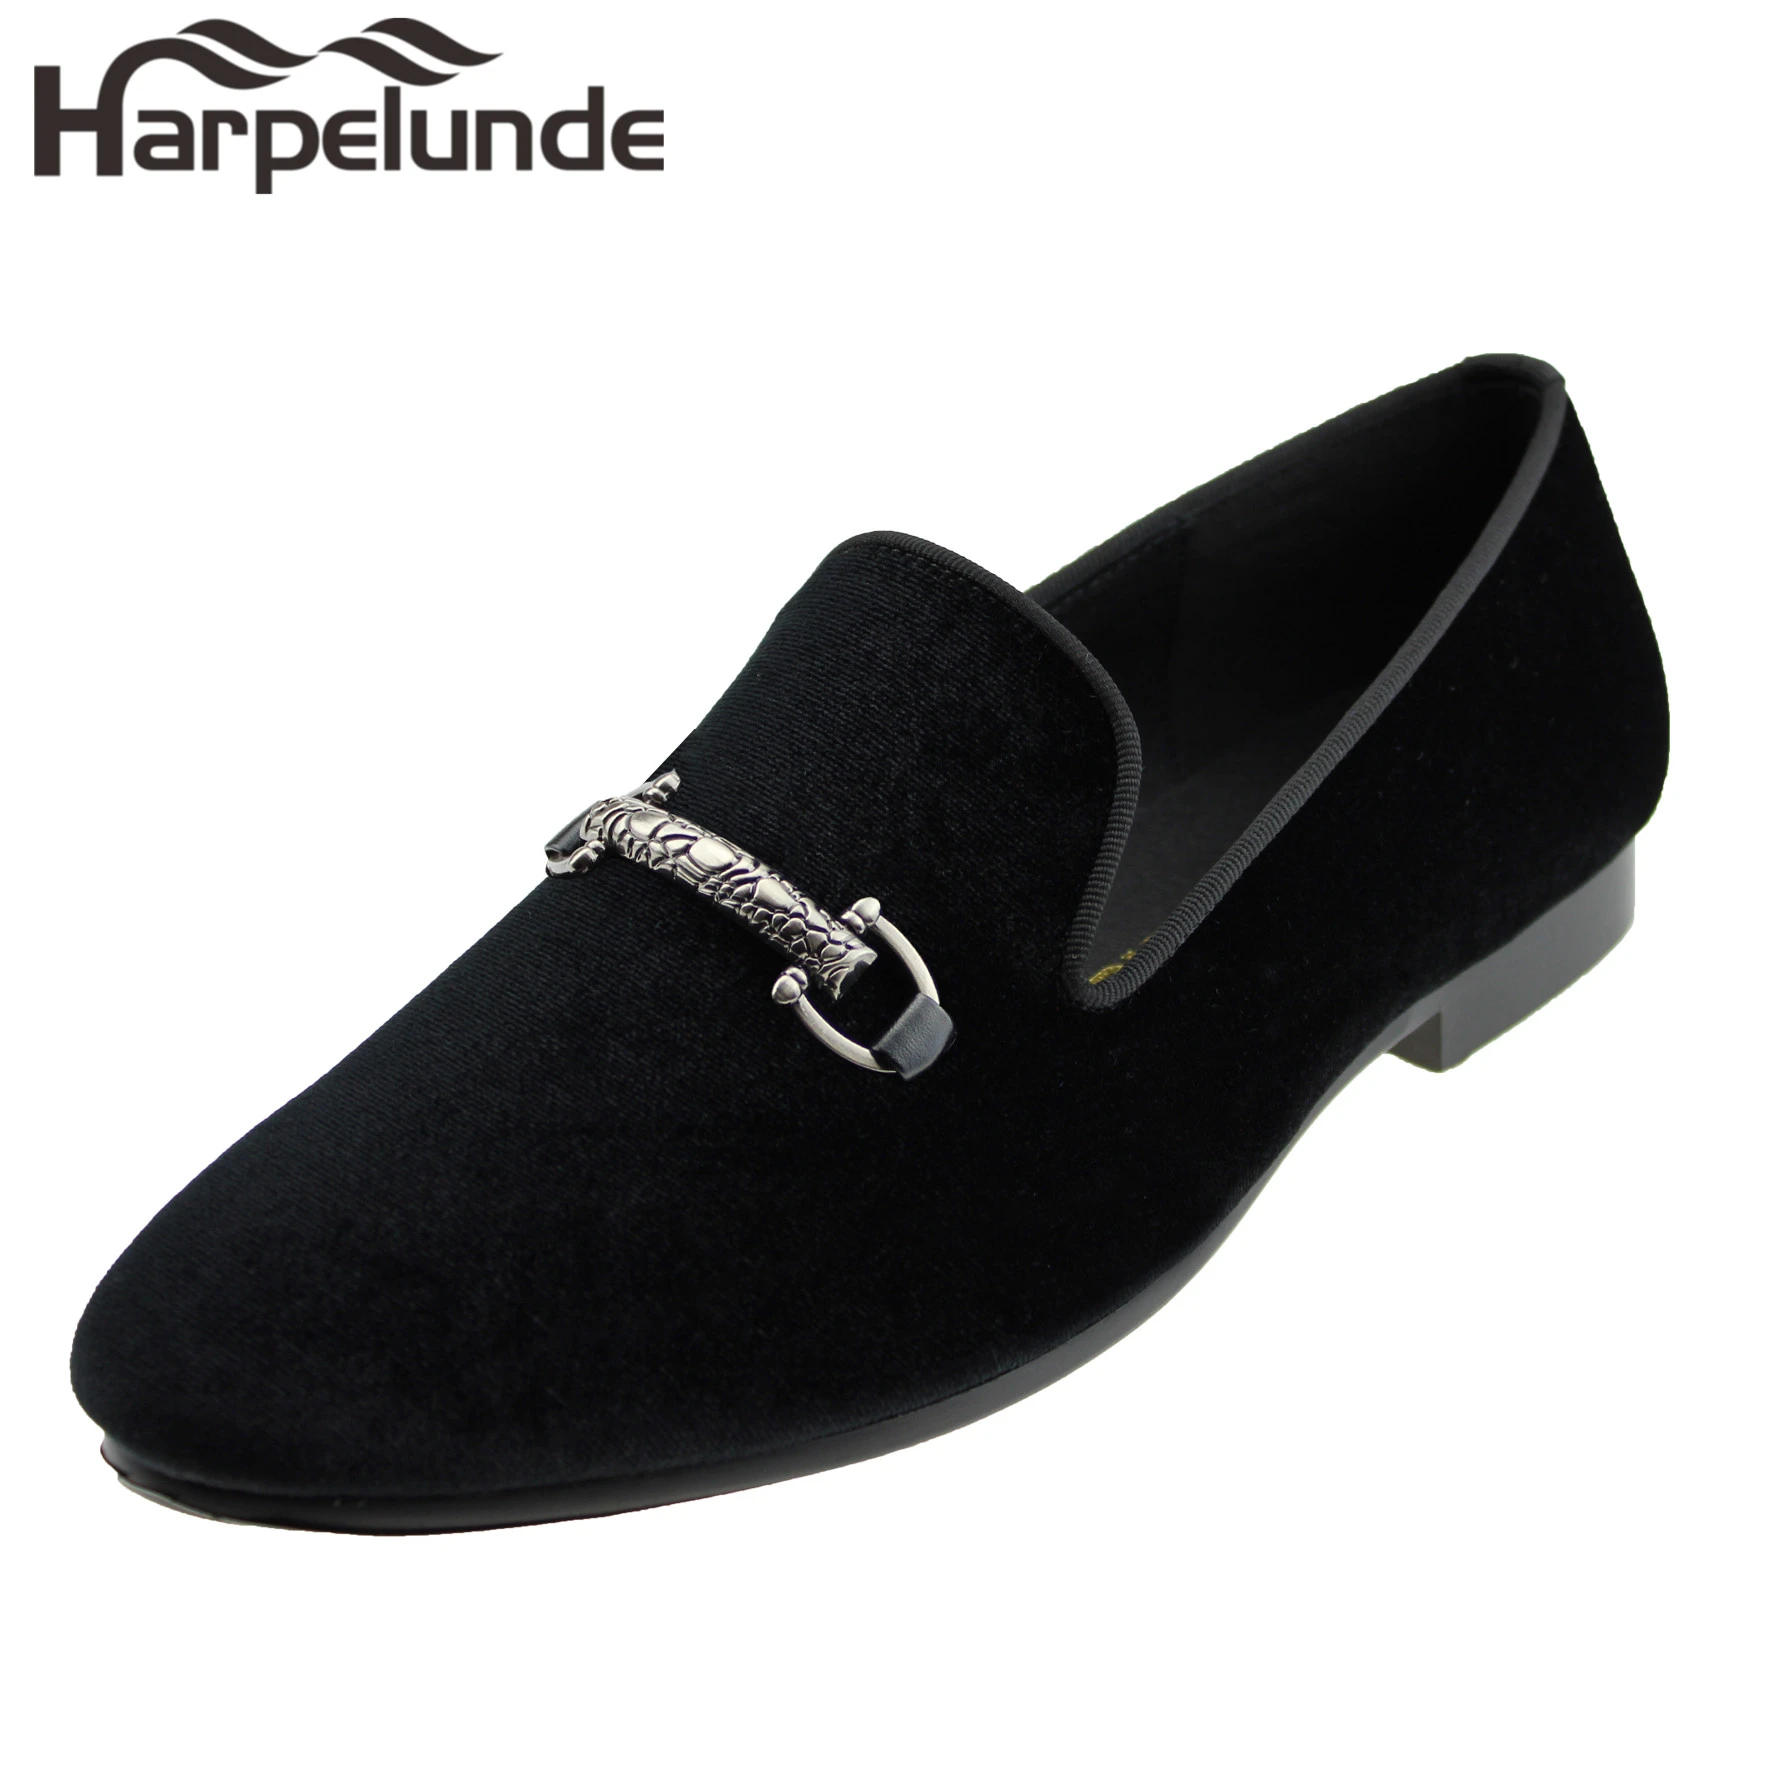 Harpelunde zapatos de para hombre, mocasines de terciopelo negro hebilla|Zapatos formales| AliExpress